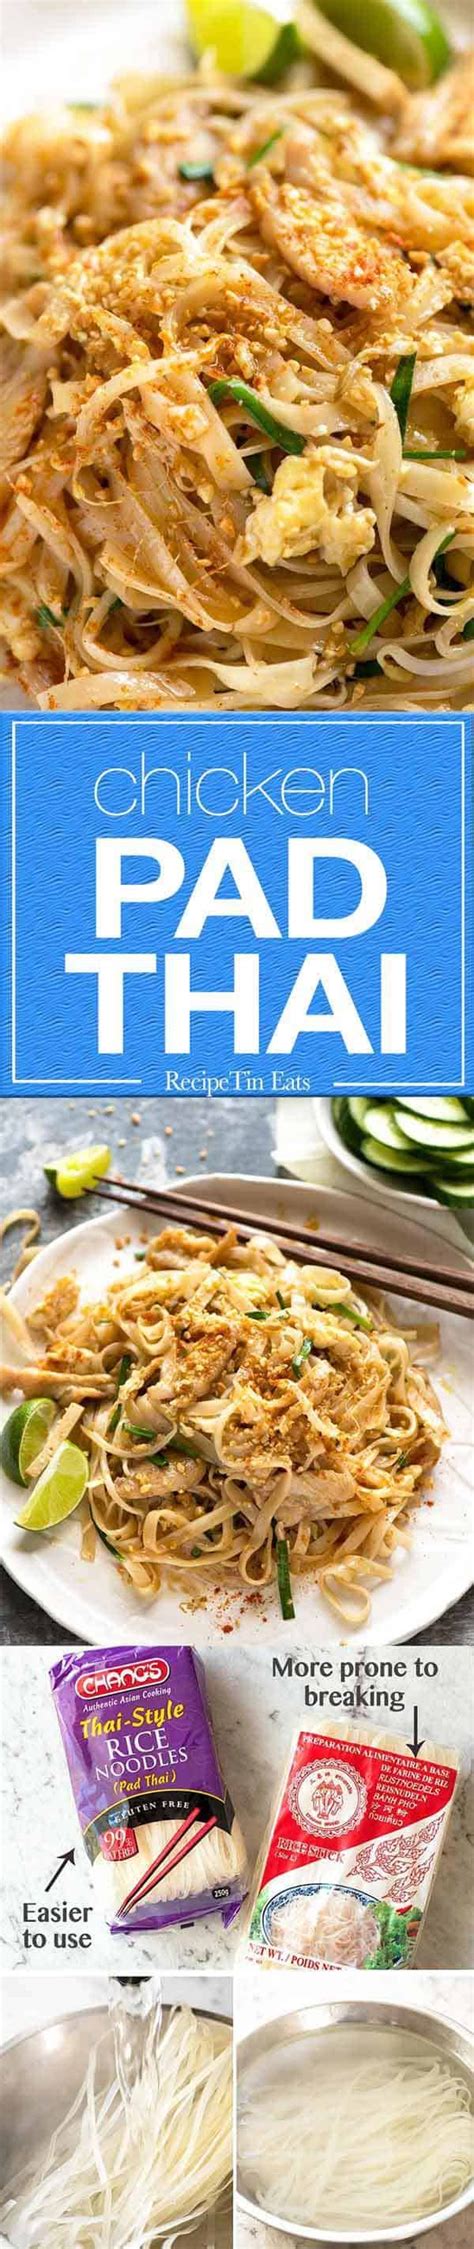 Pad Thai | Recipe | Recipes, Cooking recipes, Recipetin eats